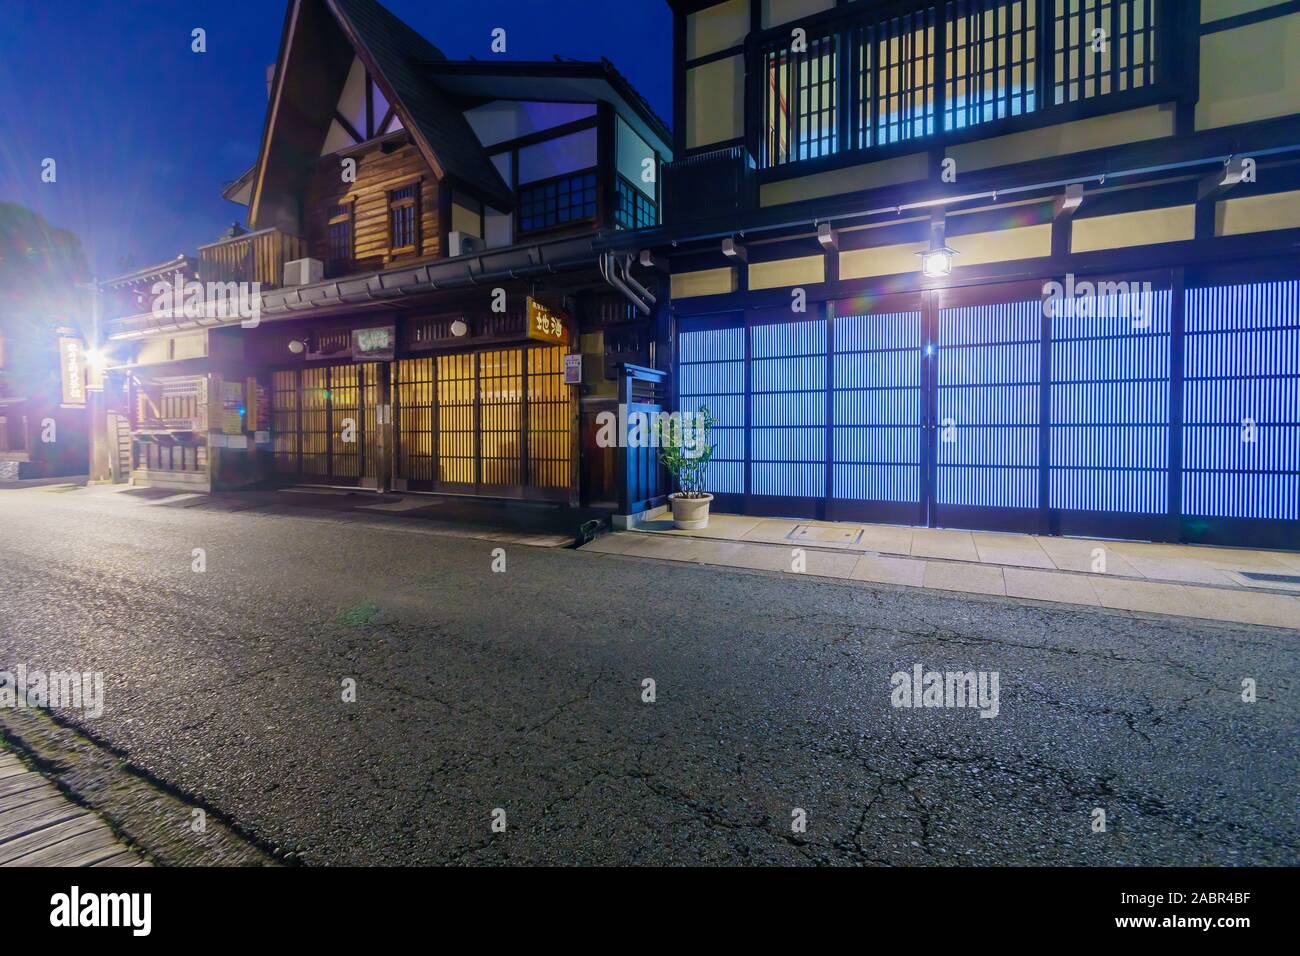 Takayama, Giappone - 2 Ottobre 2019: vista notturna di case tradizionali giapponesi nella vecchia cittadina di Takayama, Giappone Foto Stock